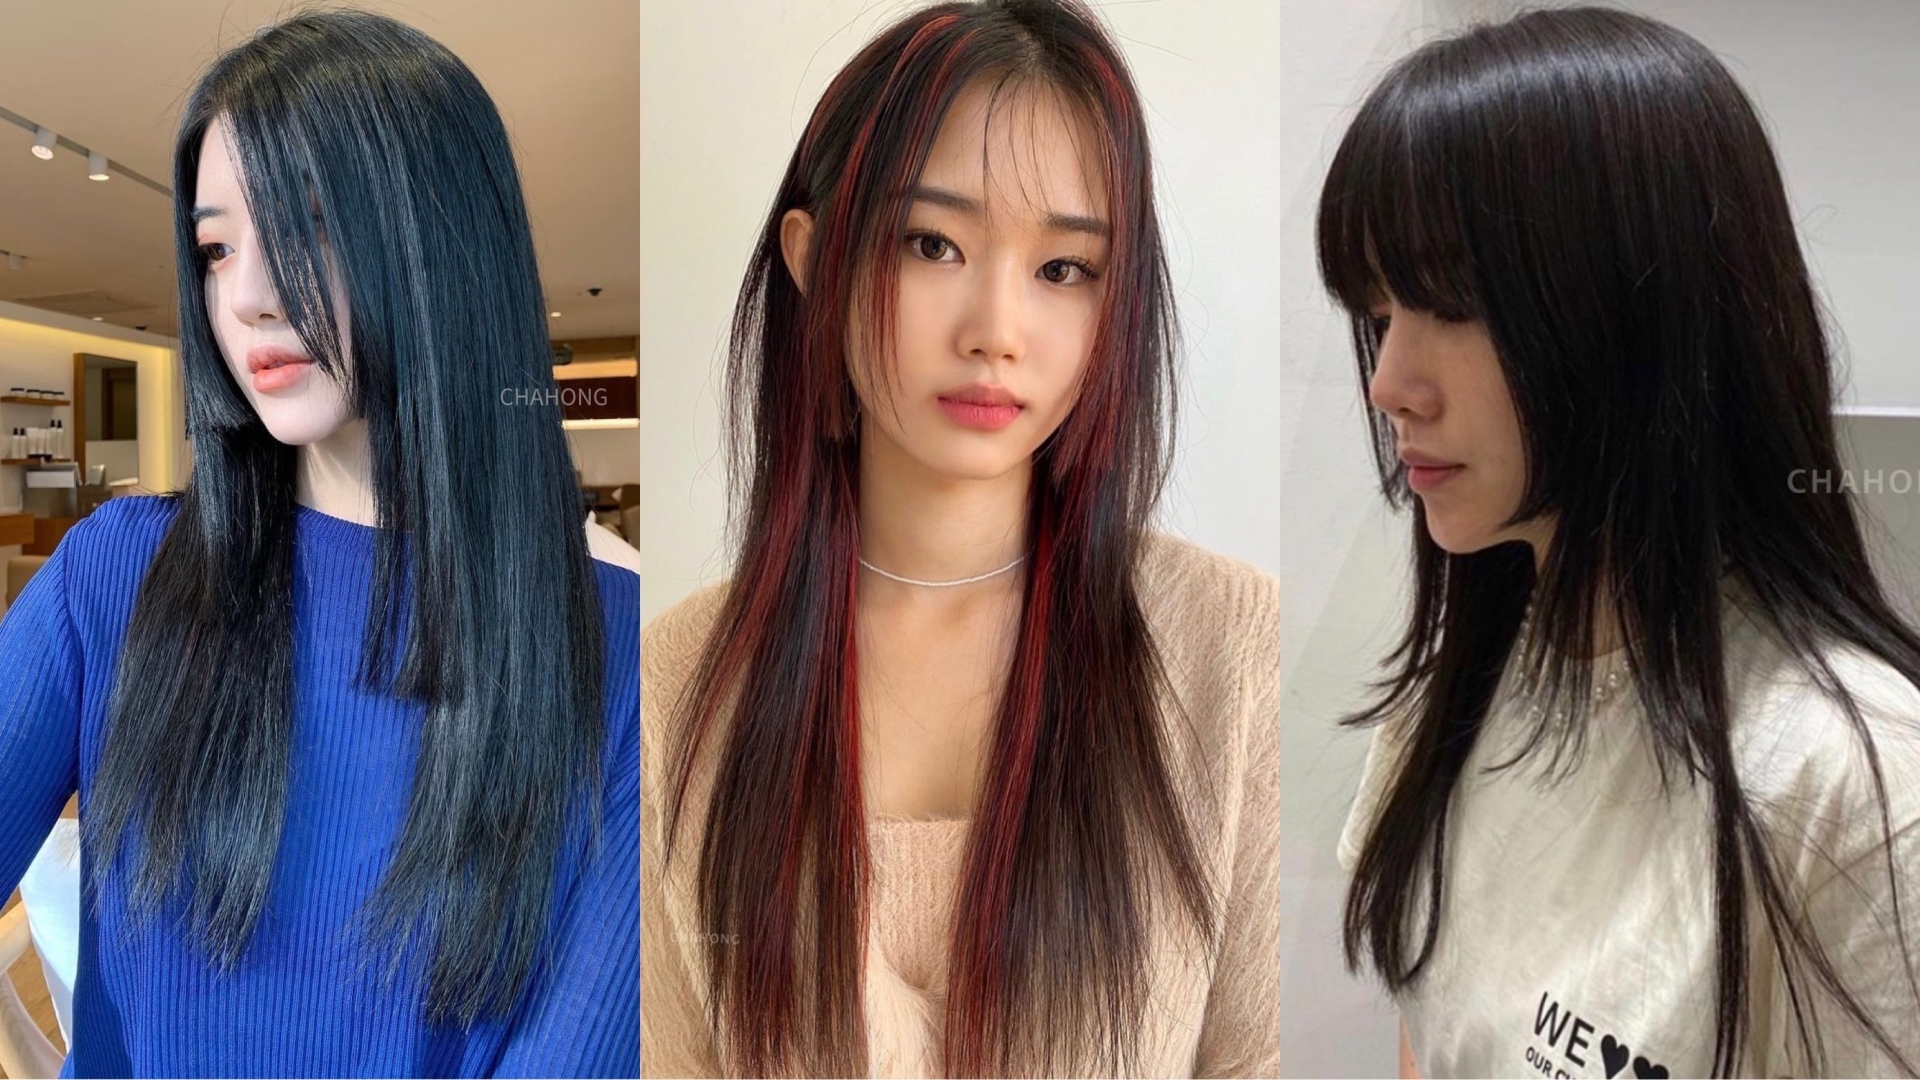 Tóc Hime chắc chắn là kiểu tóc mà các cô nàng nên thử ngay vào dịp Tết này. Bạn hoàn toàn có thể nhuộm highlight để thêm phần ấn tượng hoặc chỉ cần để màu tóc đen tự nhiên cũng đủ quyến rũ lắm rồi.